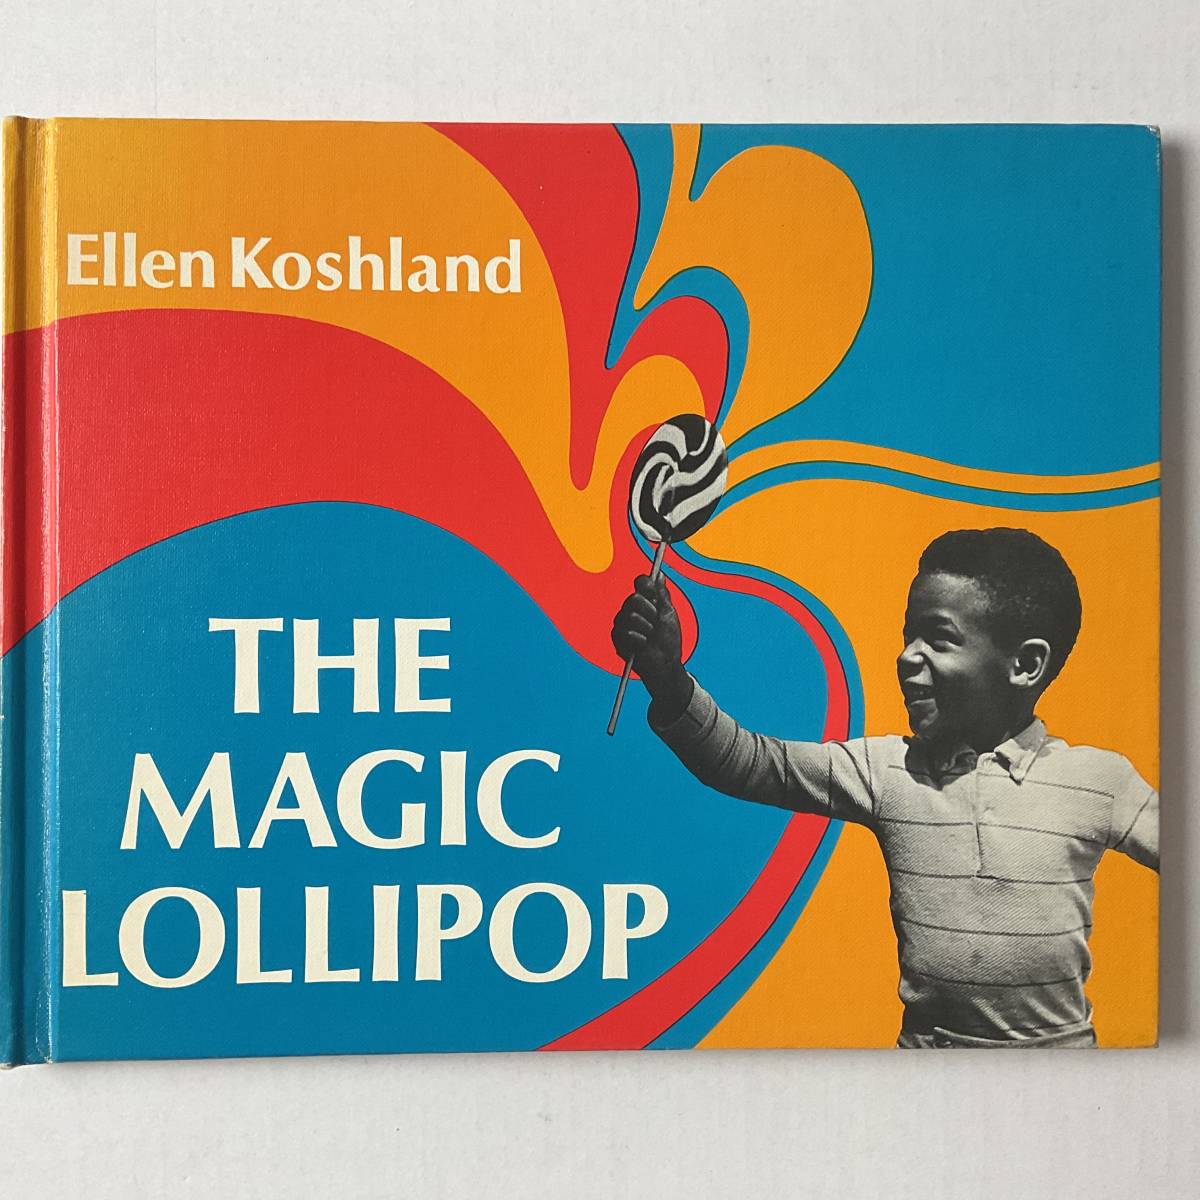 入手困難 レア古書 洋書 写真絵本 マジックロリポップ THE MAGIC LOLLIPOP ハードカバー 1971年 英語版 ELLEN KOSHLAND 黒人 子供 美本 Yahoo!フリマ（旧）